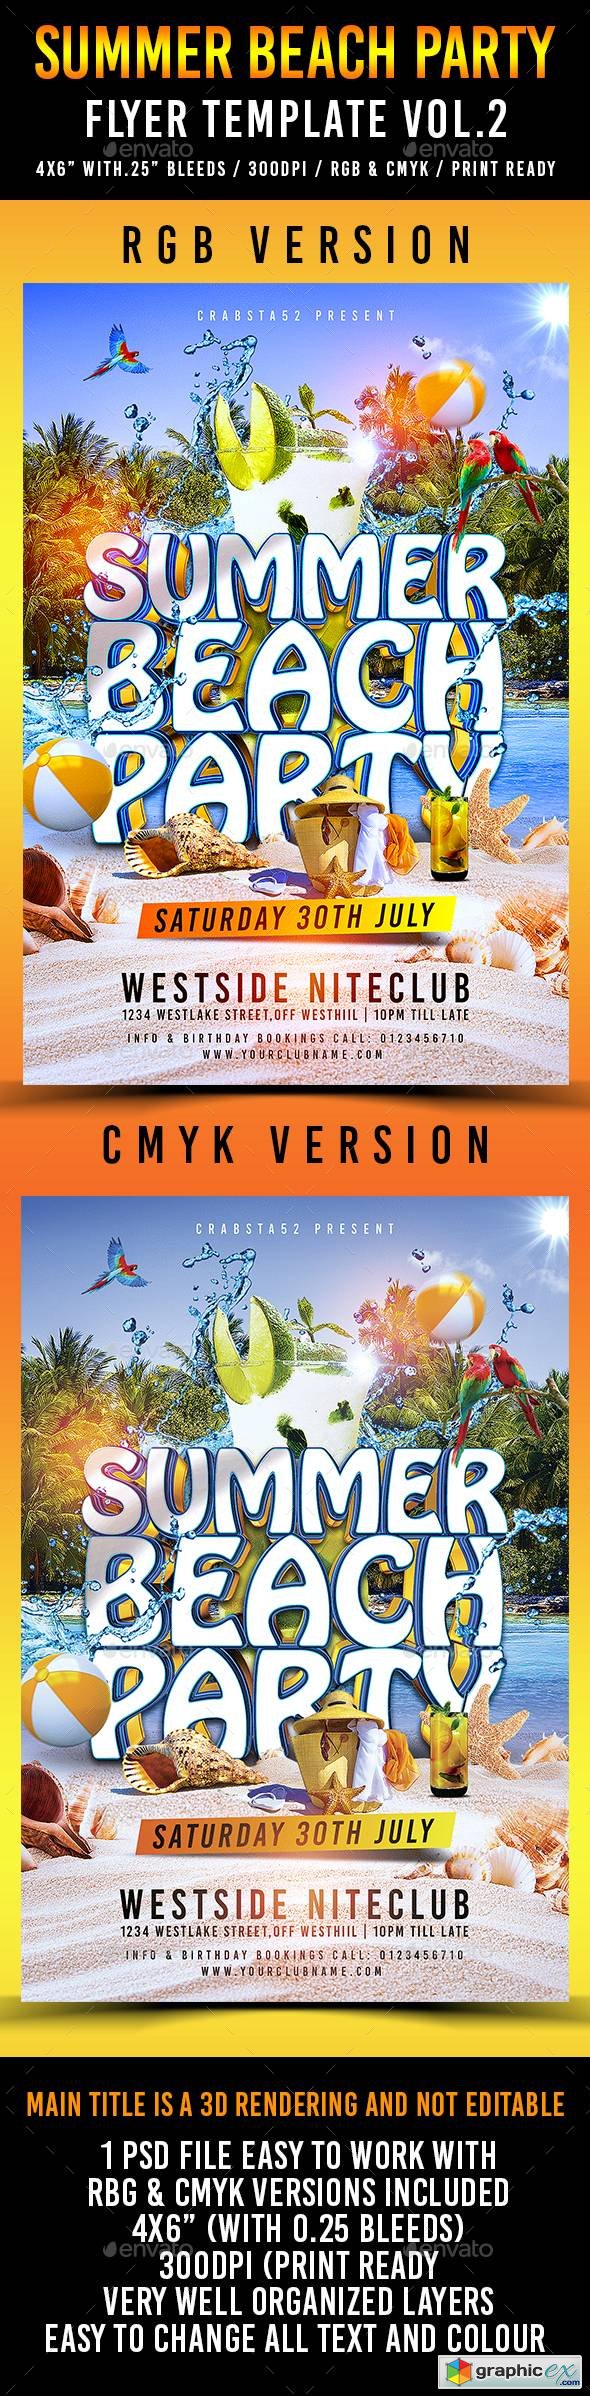 Summer Beach Party Flyer Template Vol.2